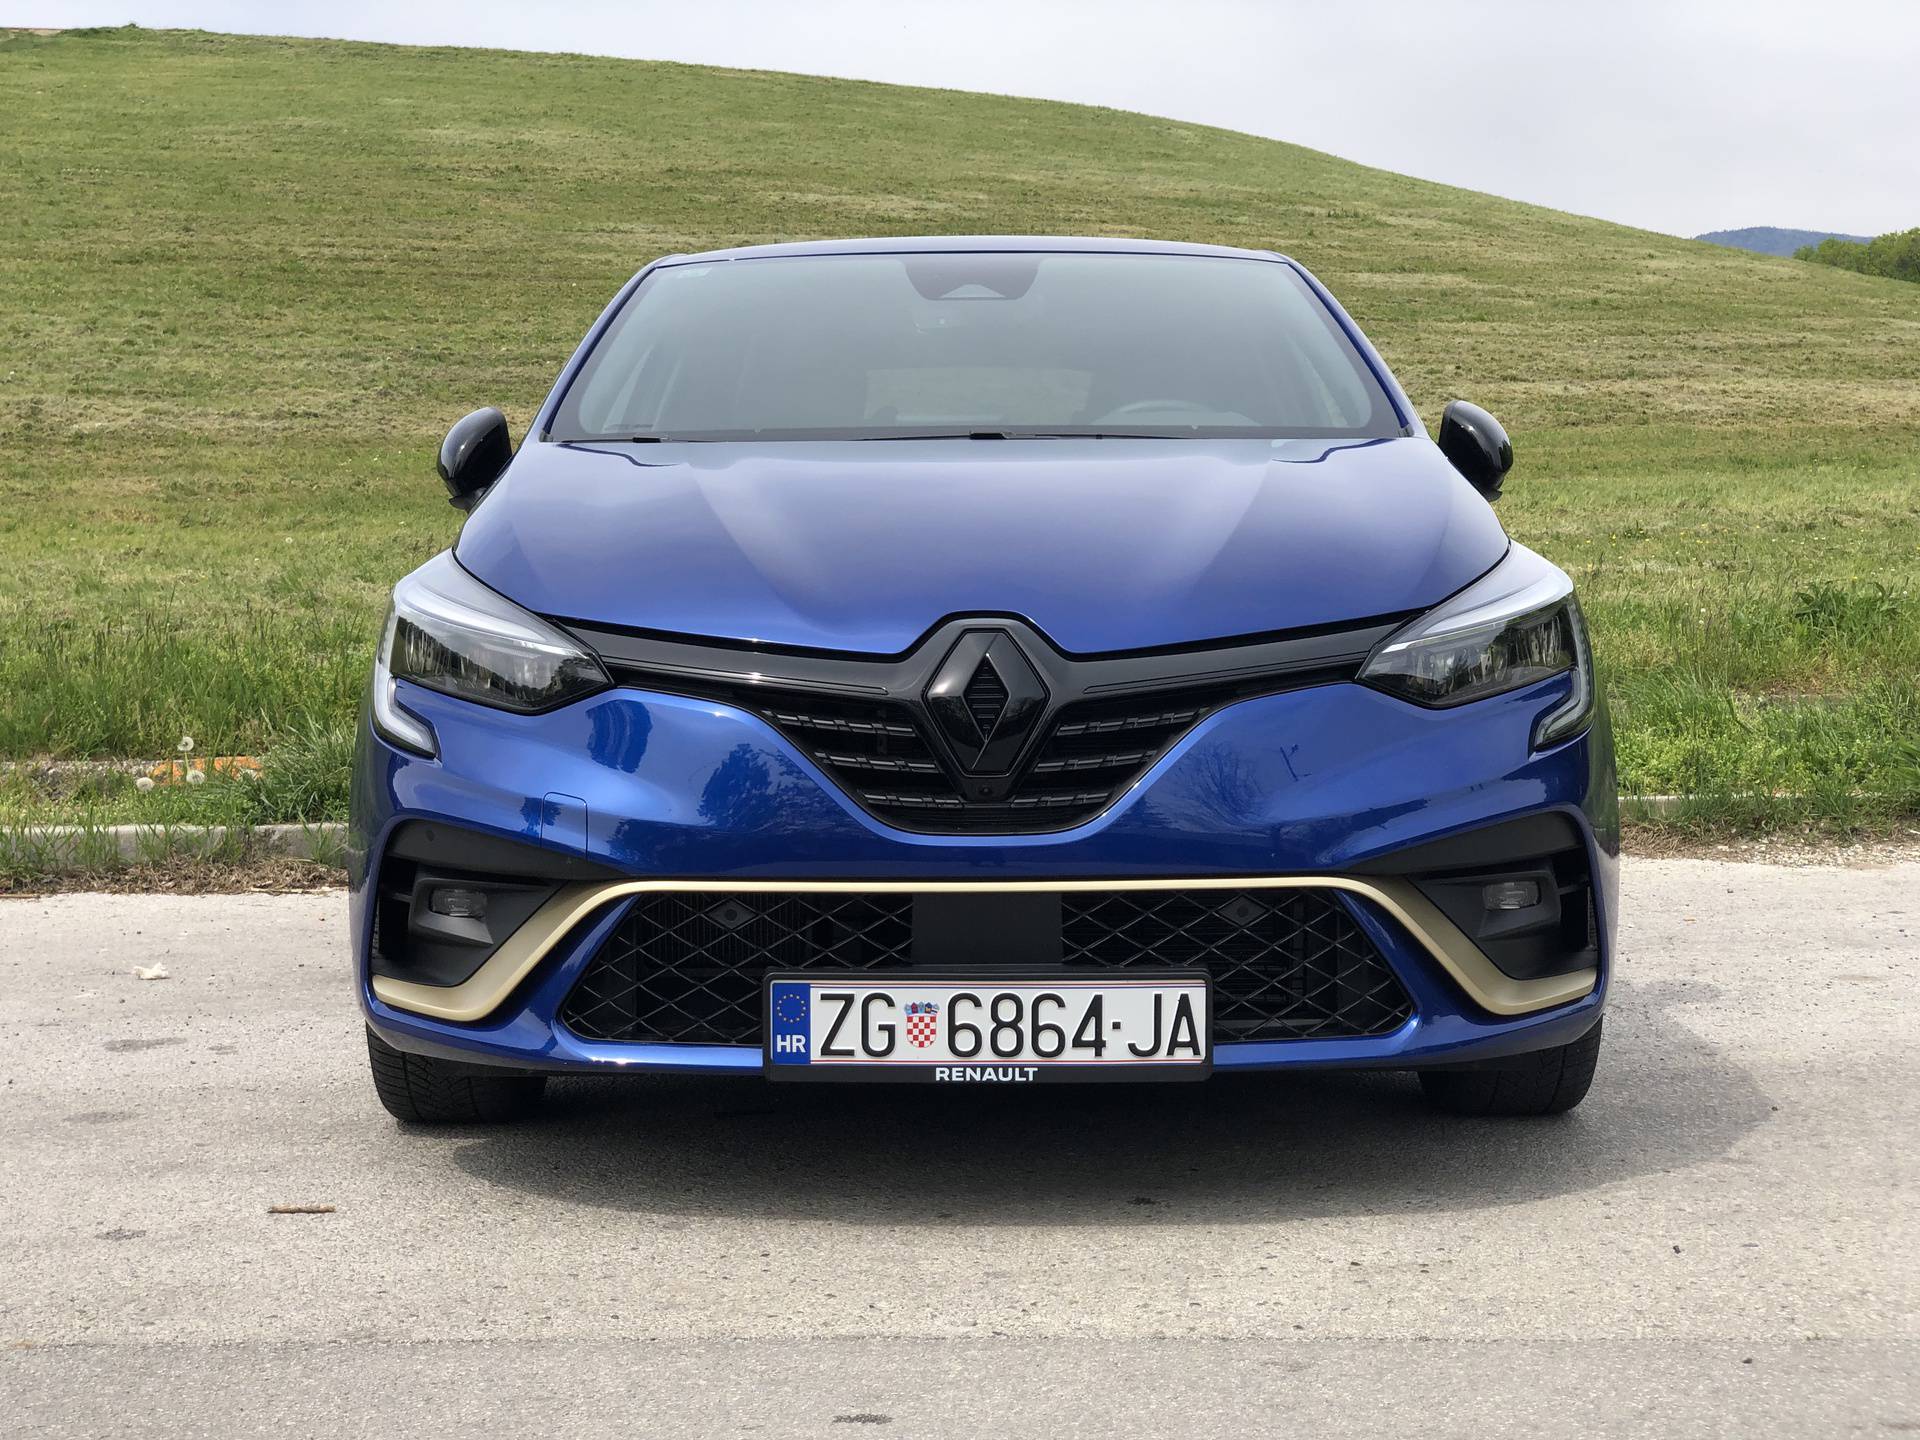 Testirali smo: Hibridni Renault Clio troši na kapaljku, može i manje od 3 litre na 100 km